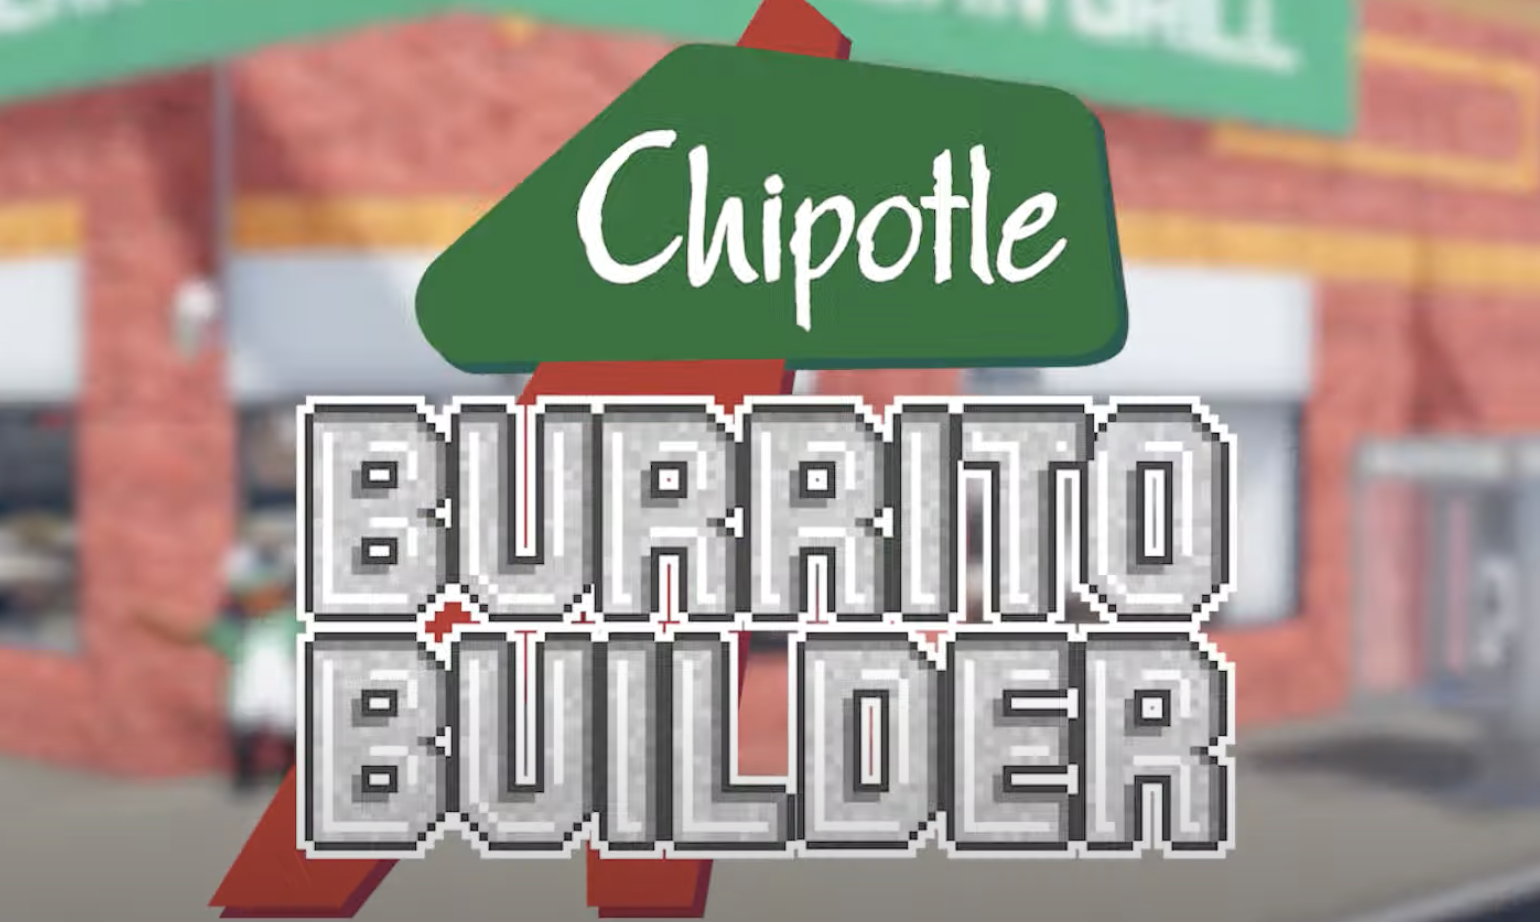 Chipotle Burrito Builder - Roblox